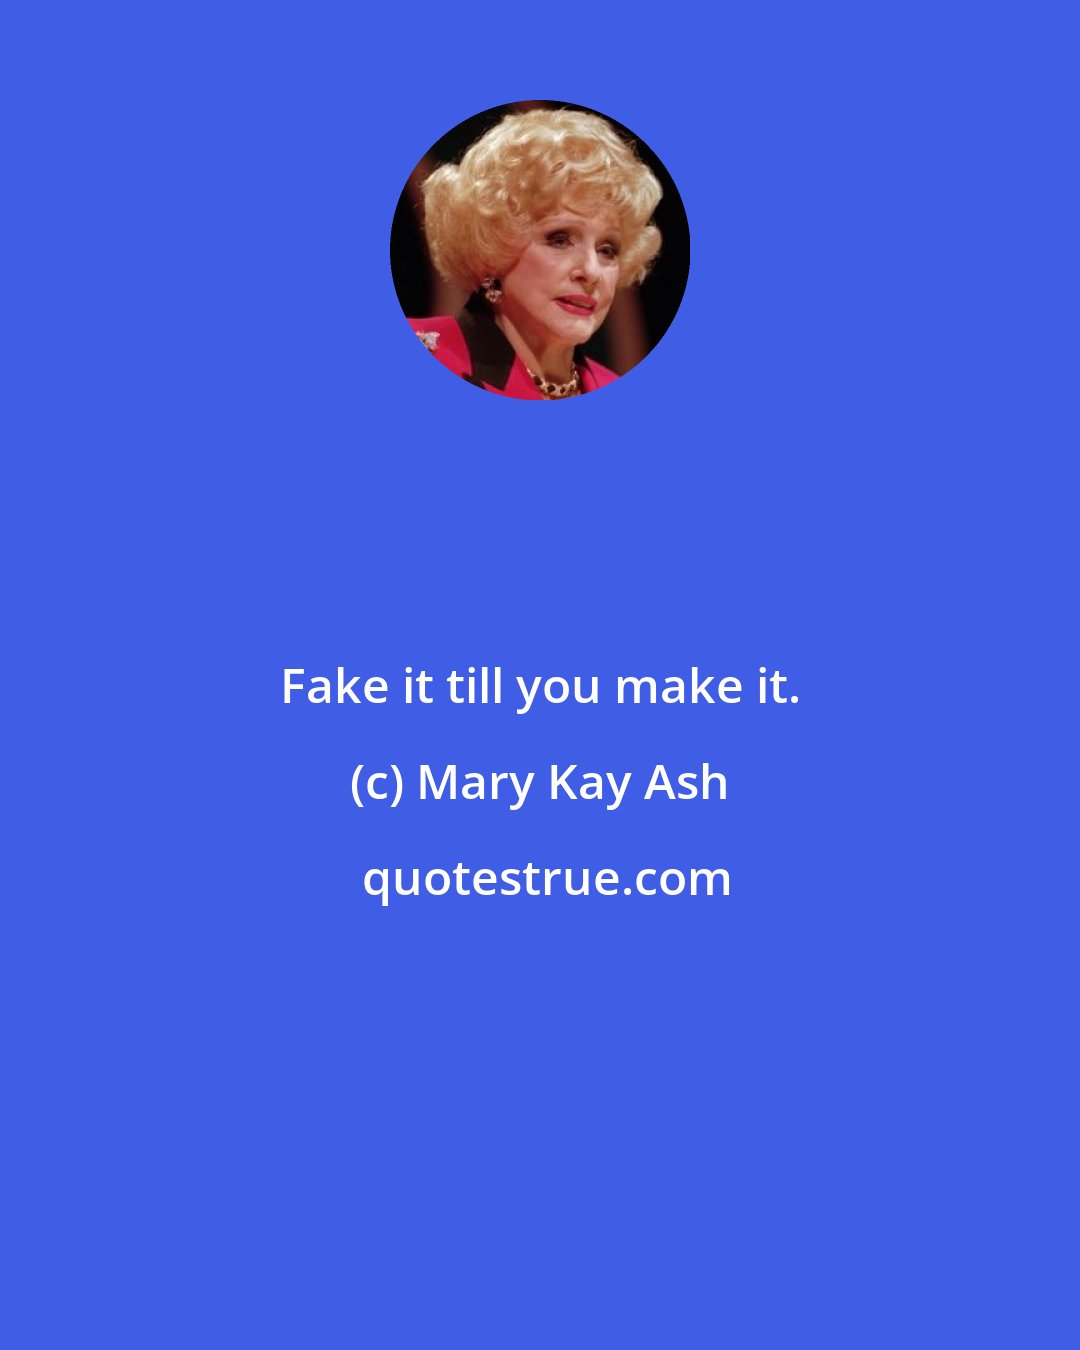 Mary Kay Ash: Fake it till you make it.